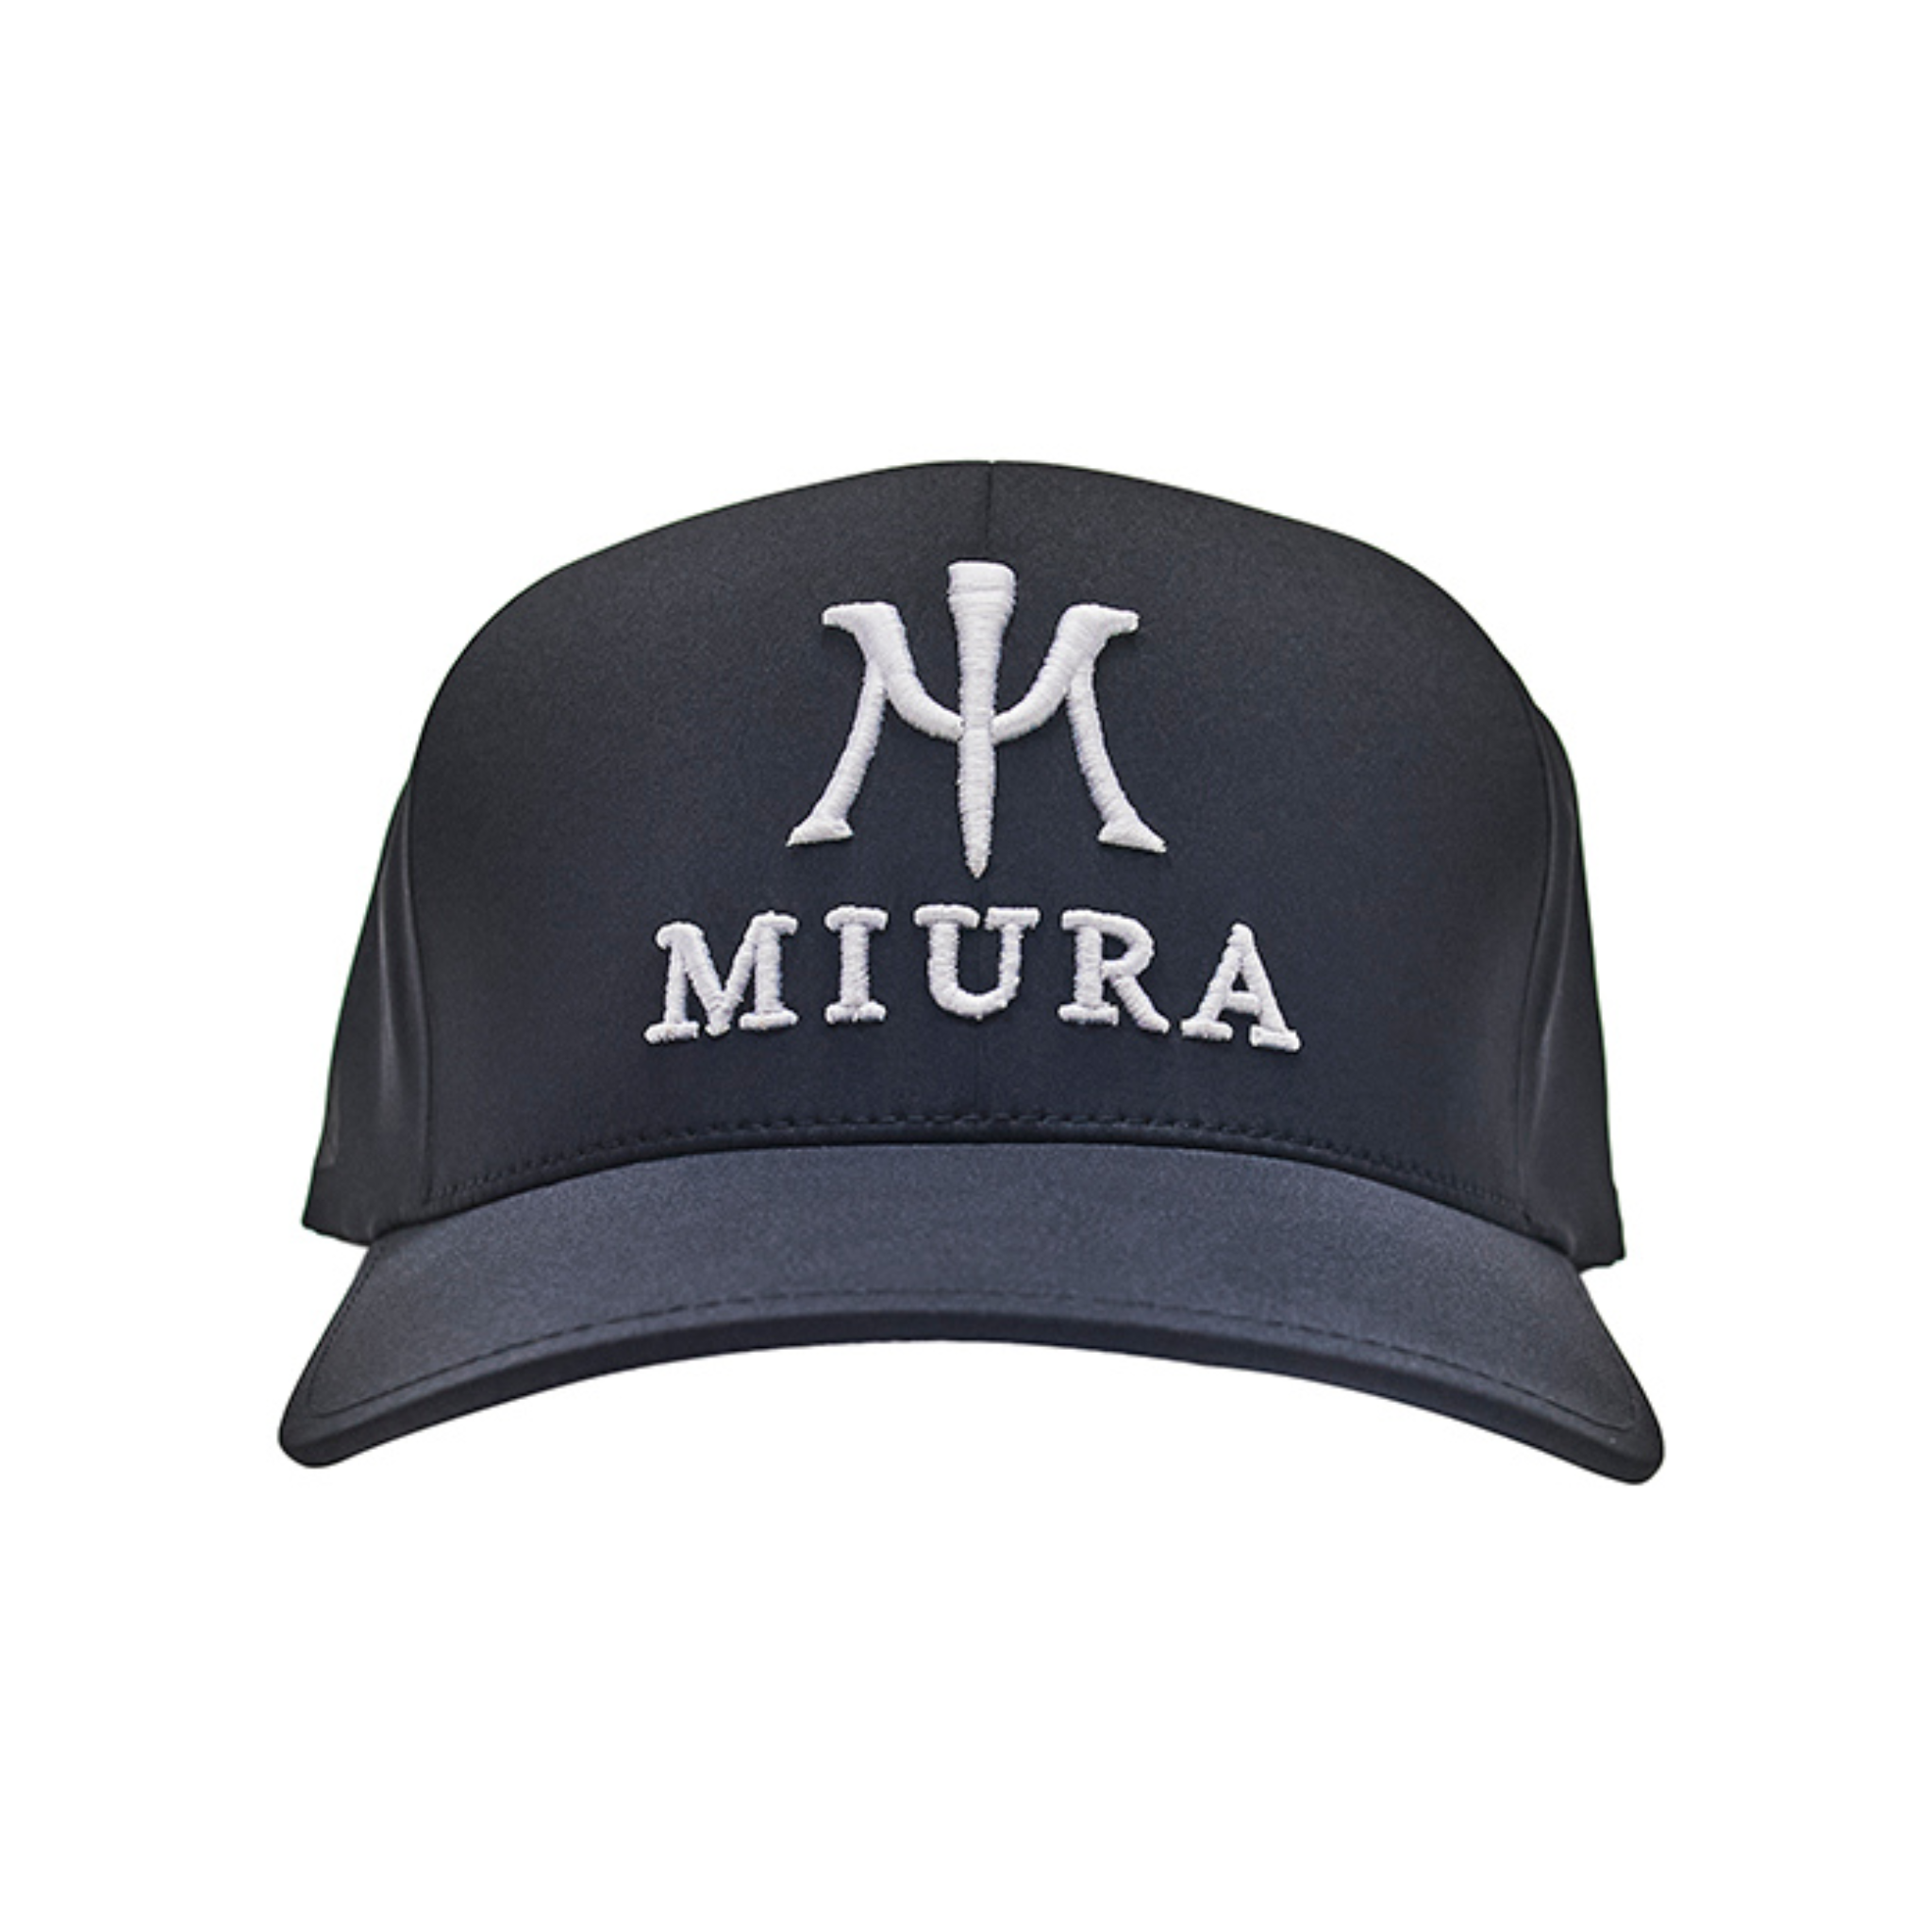 Miura FlexFit Delta Hat